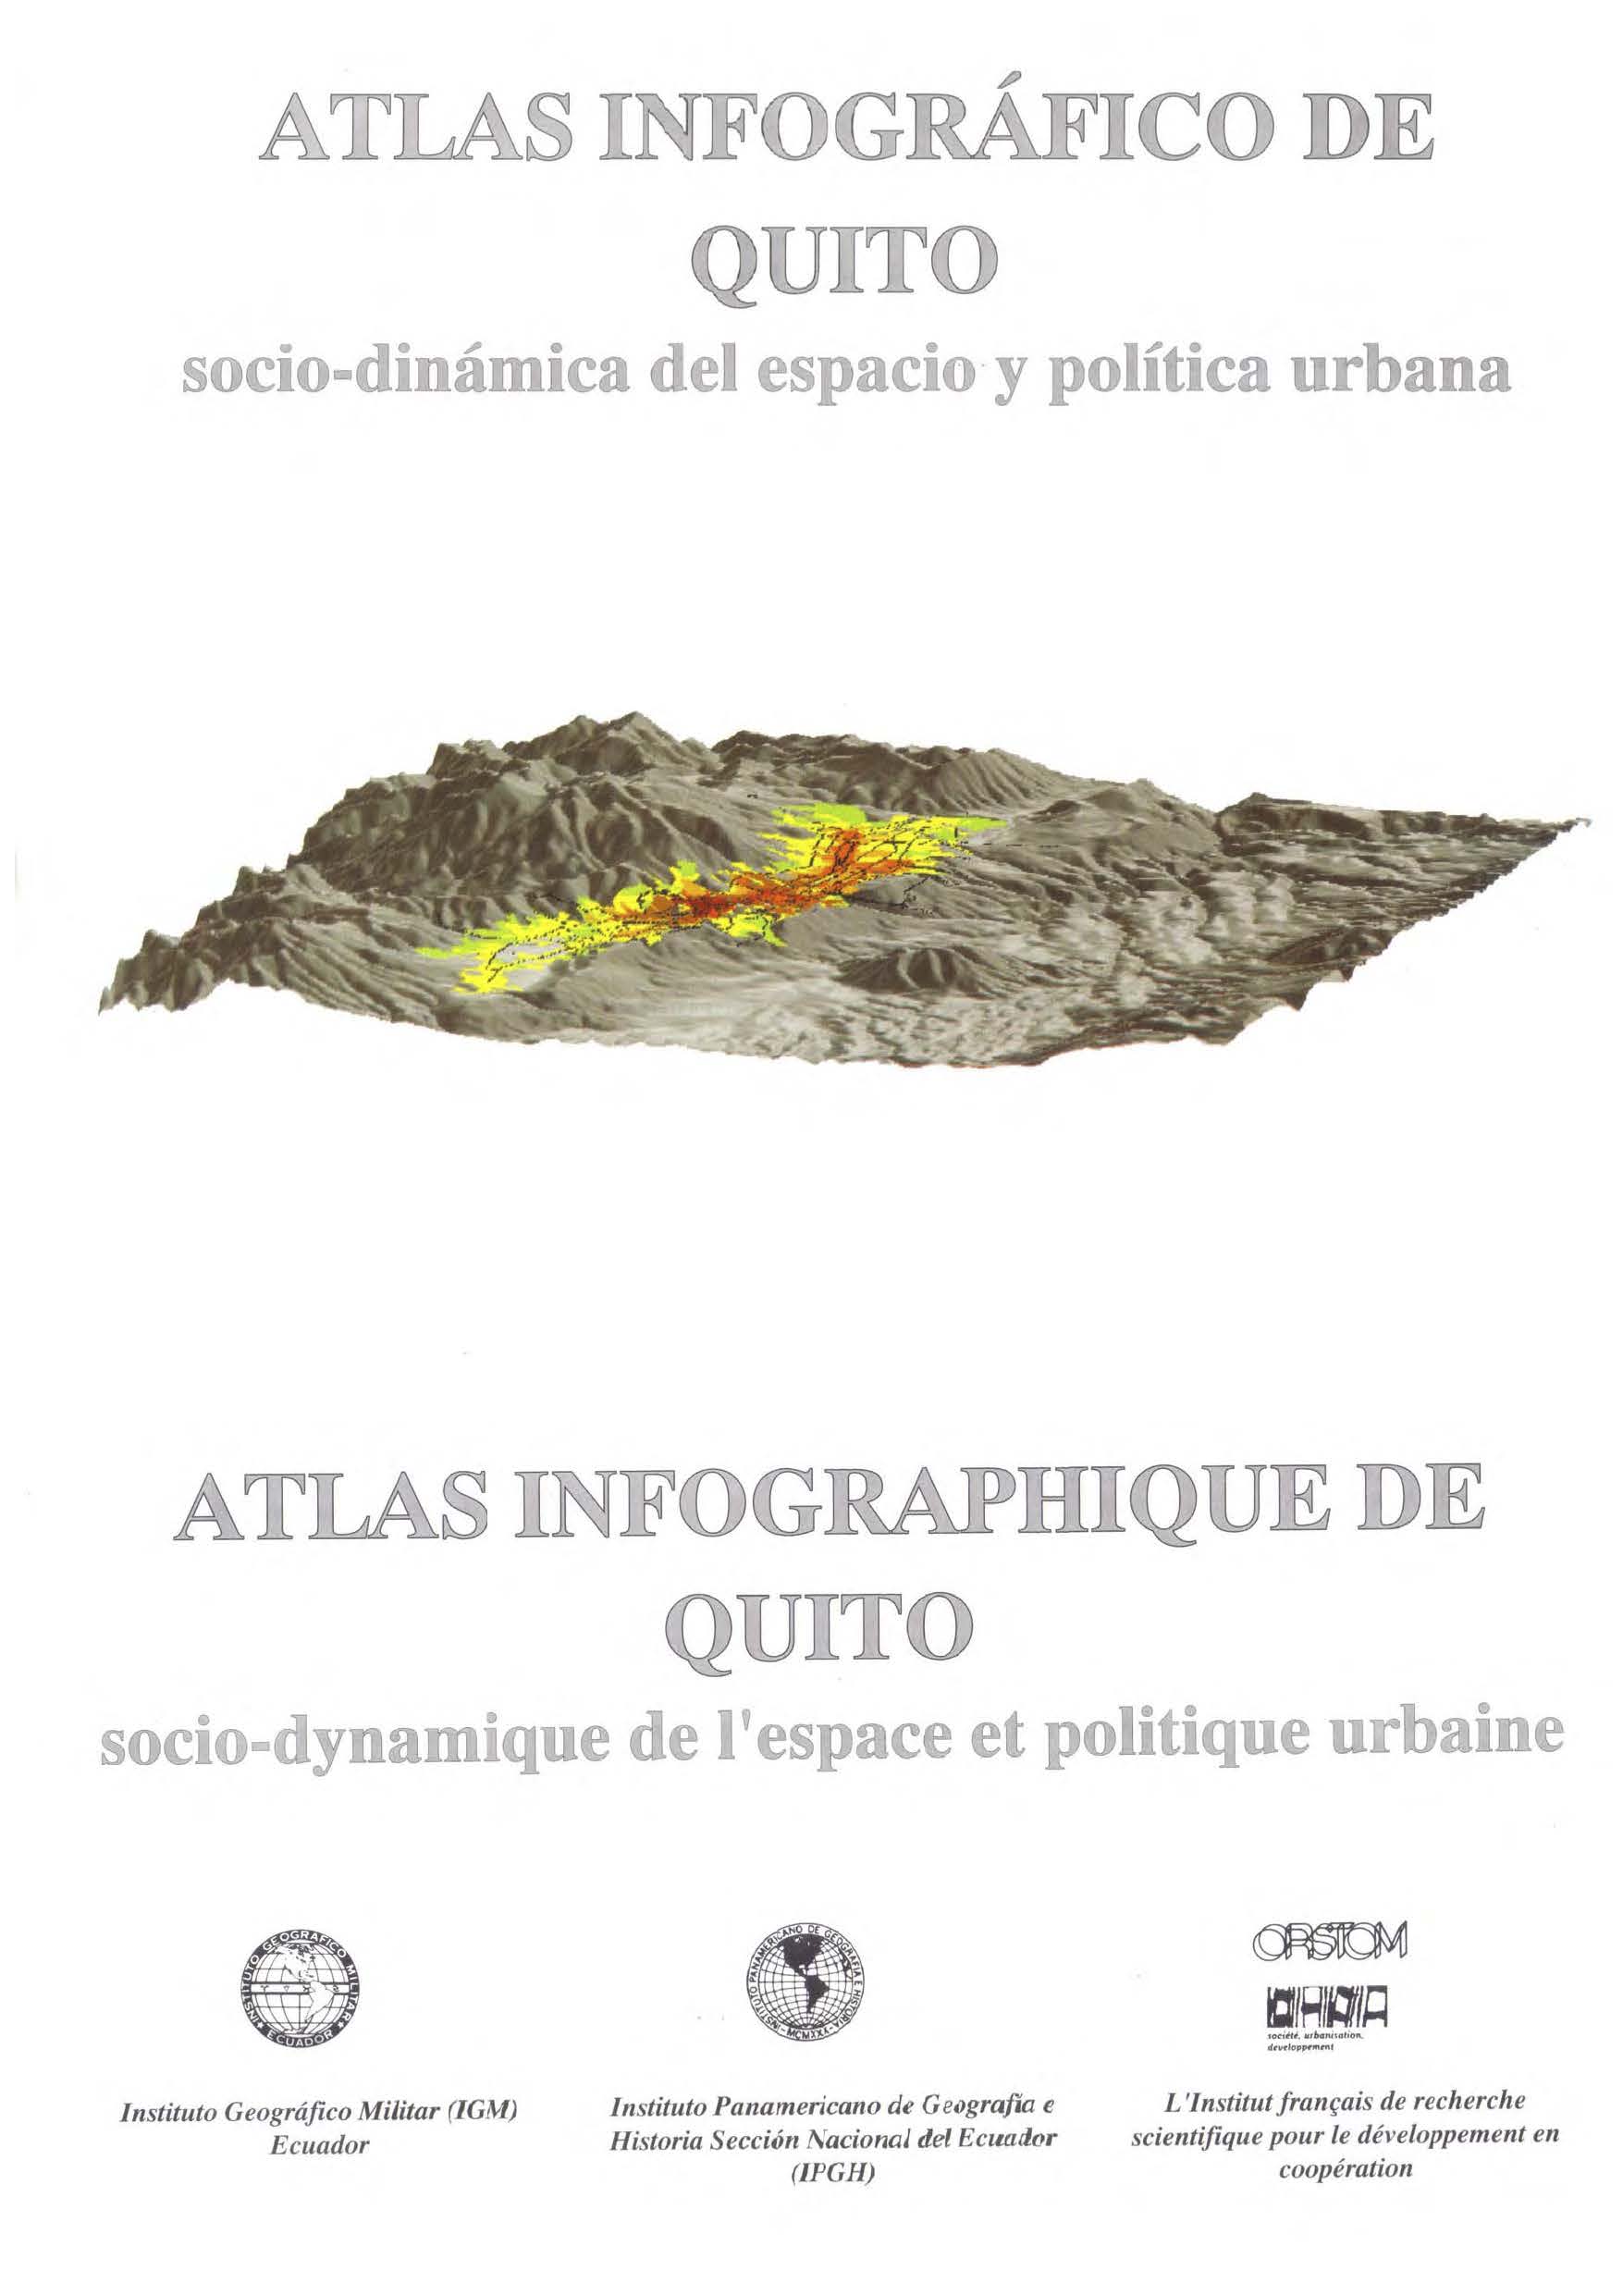 Atlas infográfico de Quito